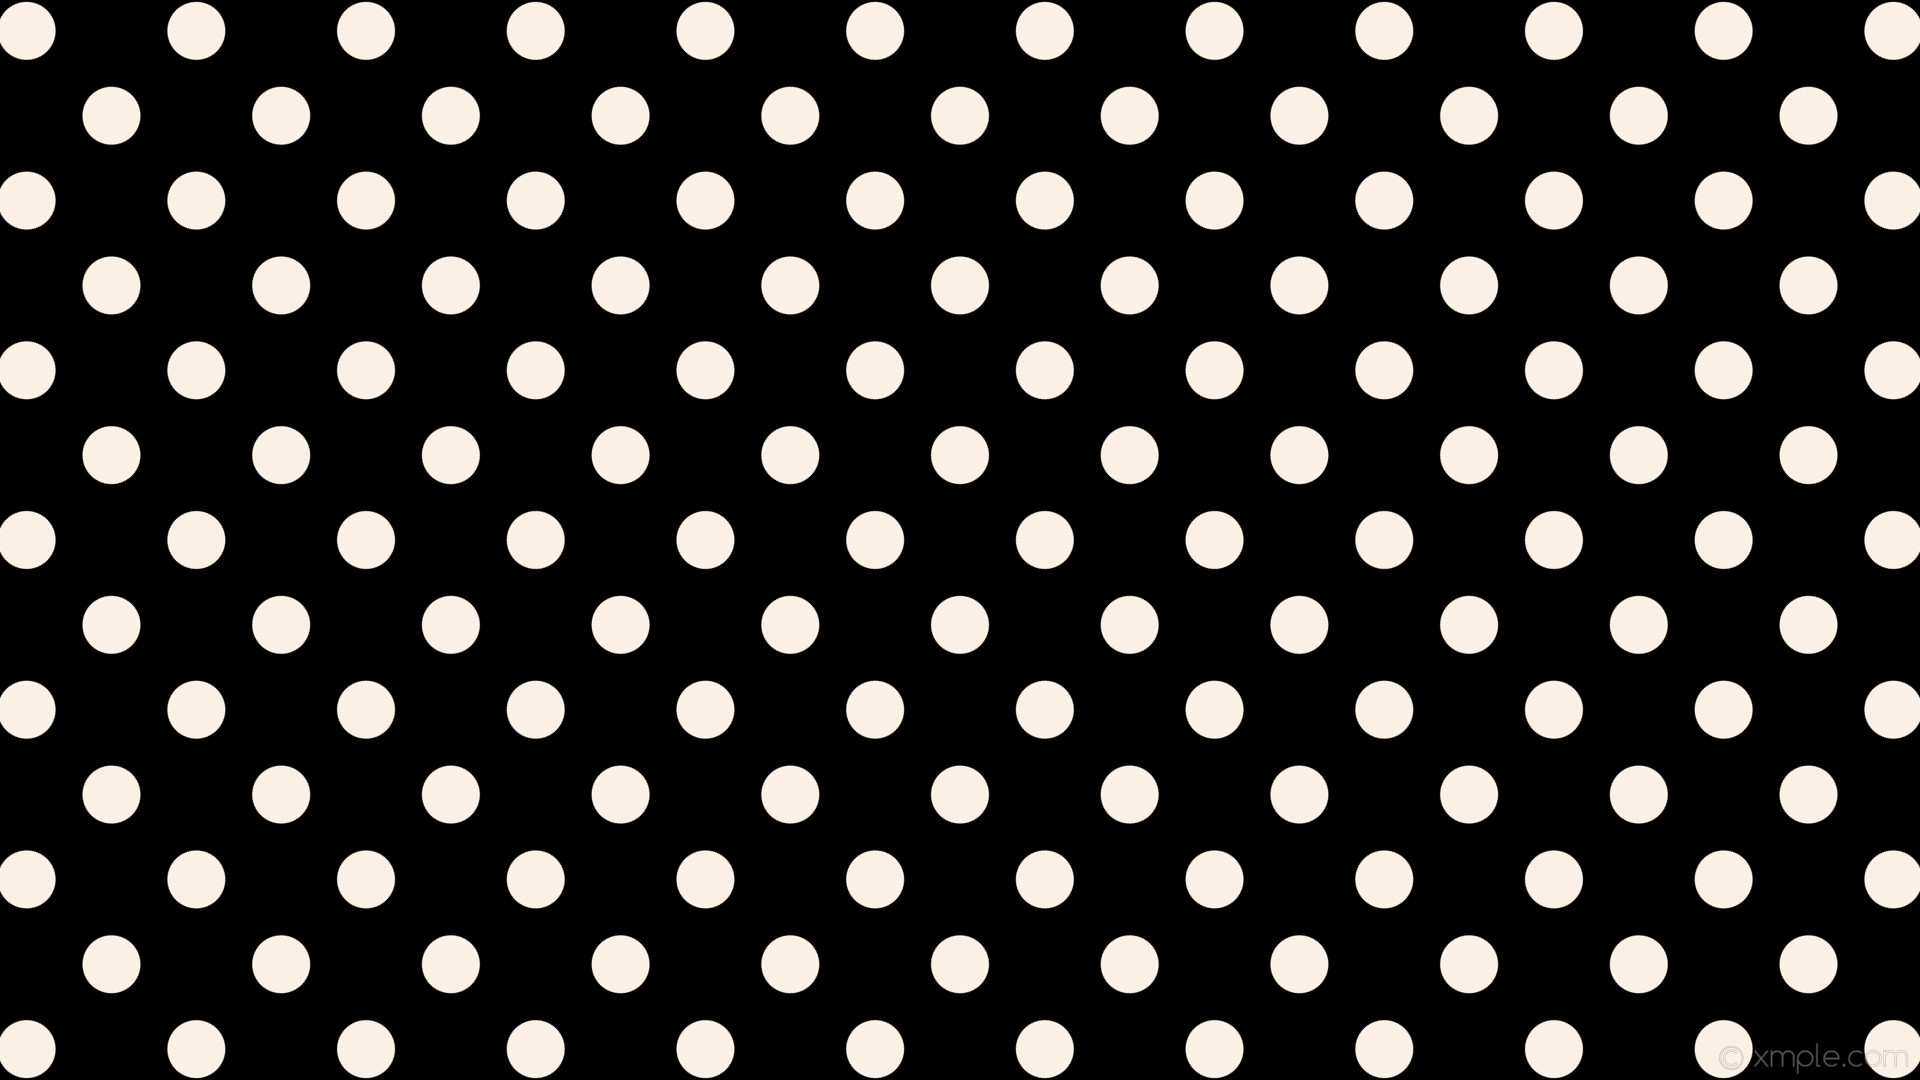 1920x1080 wallpaper dots white spots polka black linen #000000 #faf0e6 315Â° 58px 120px